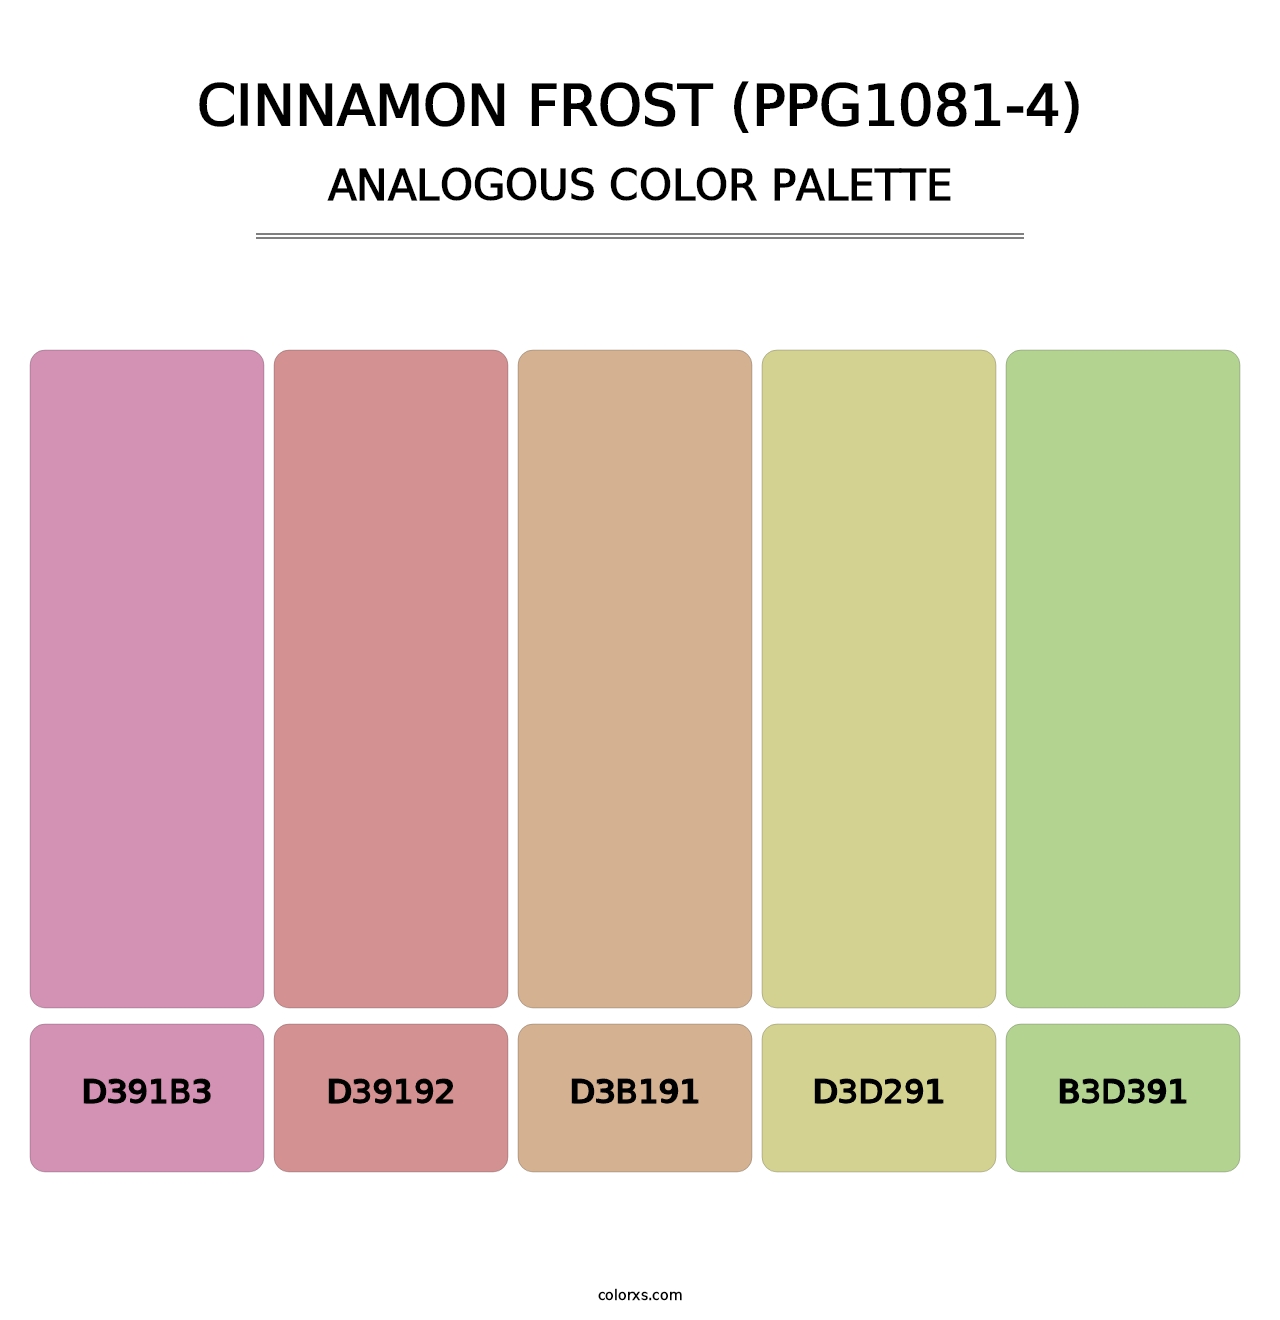 Cinnamon Frost (PPG1081-4) - Analogous Color Palette